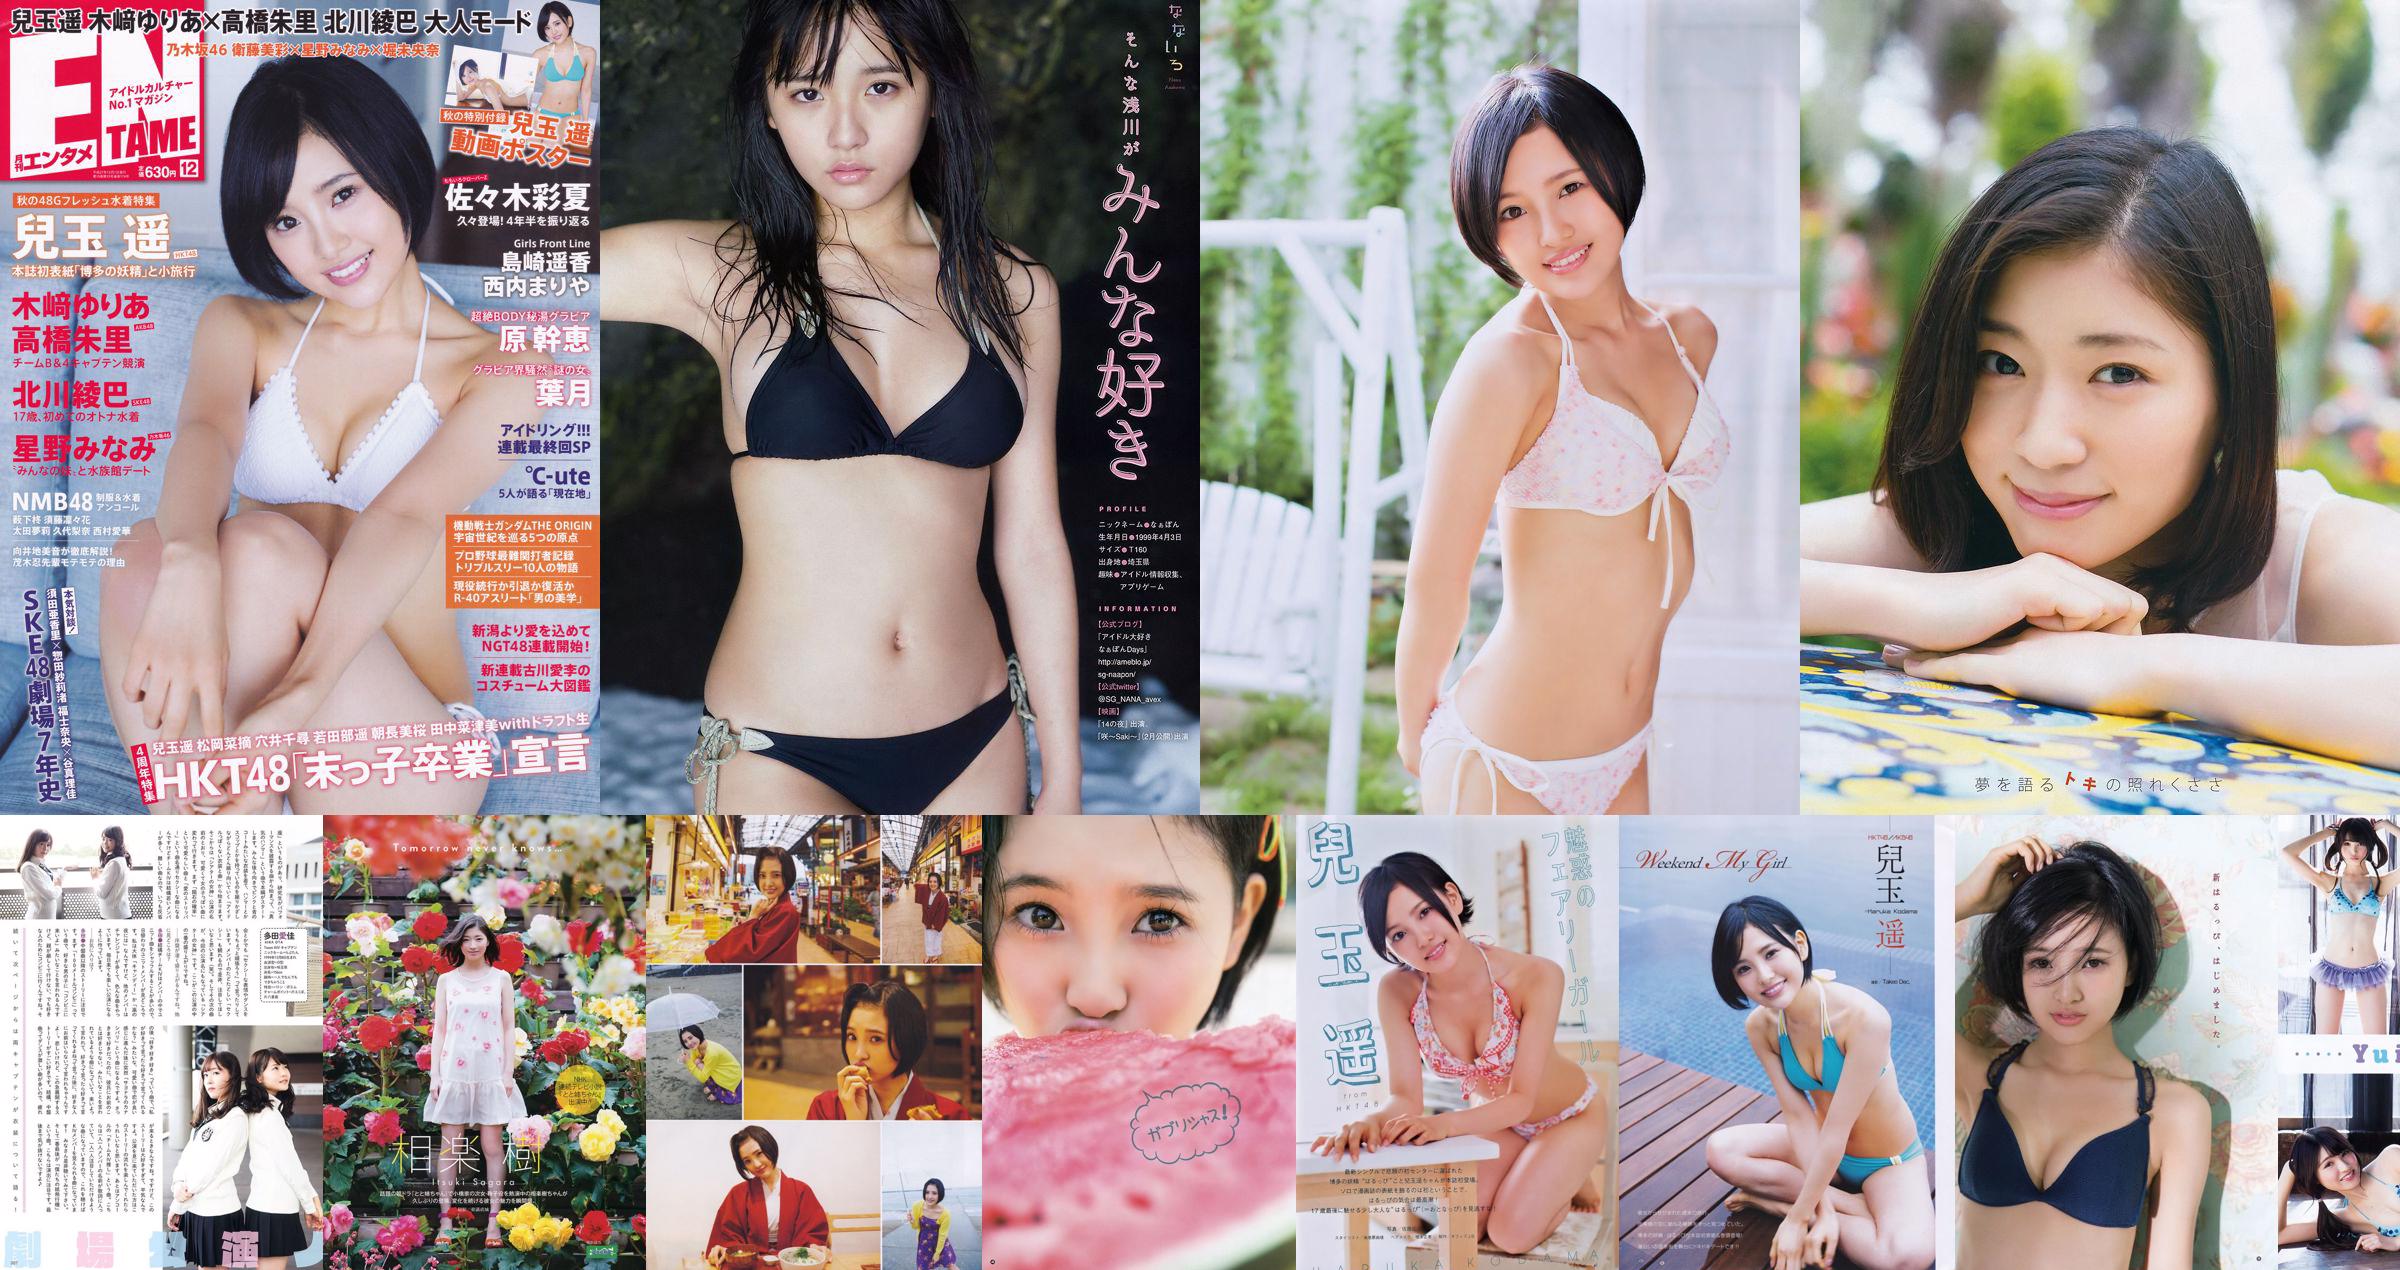 [Young Gangan] Haruka Kodama Itsuki Sagara 2016 No.11 Photo Magazine No.a7abec Pagina 3